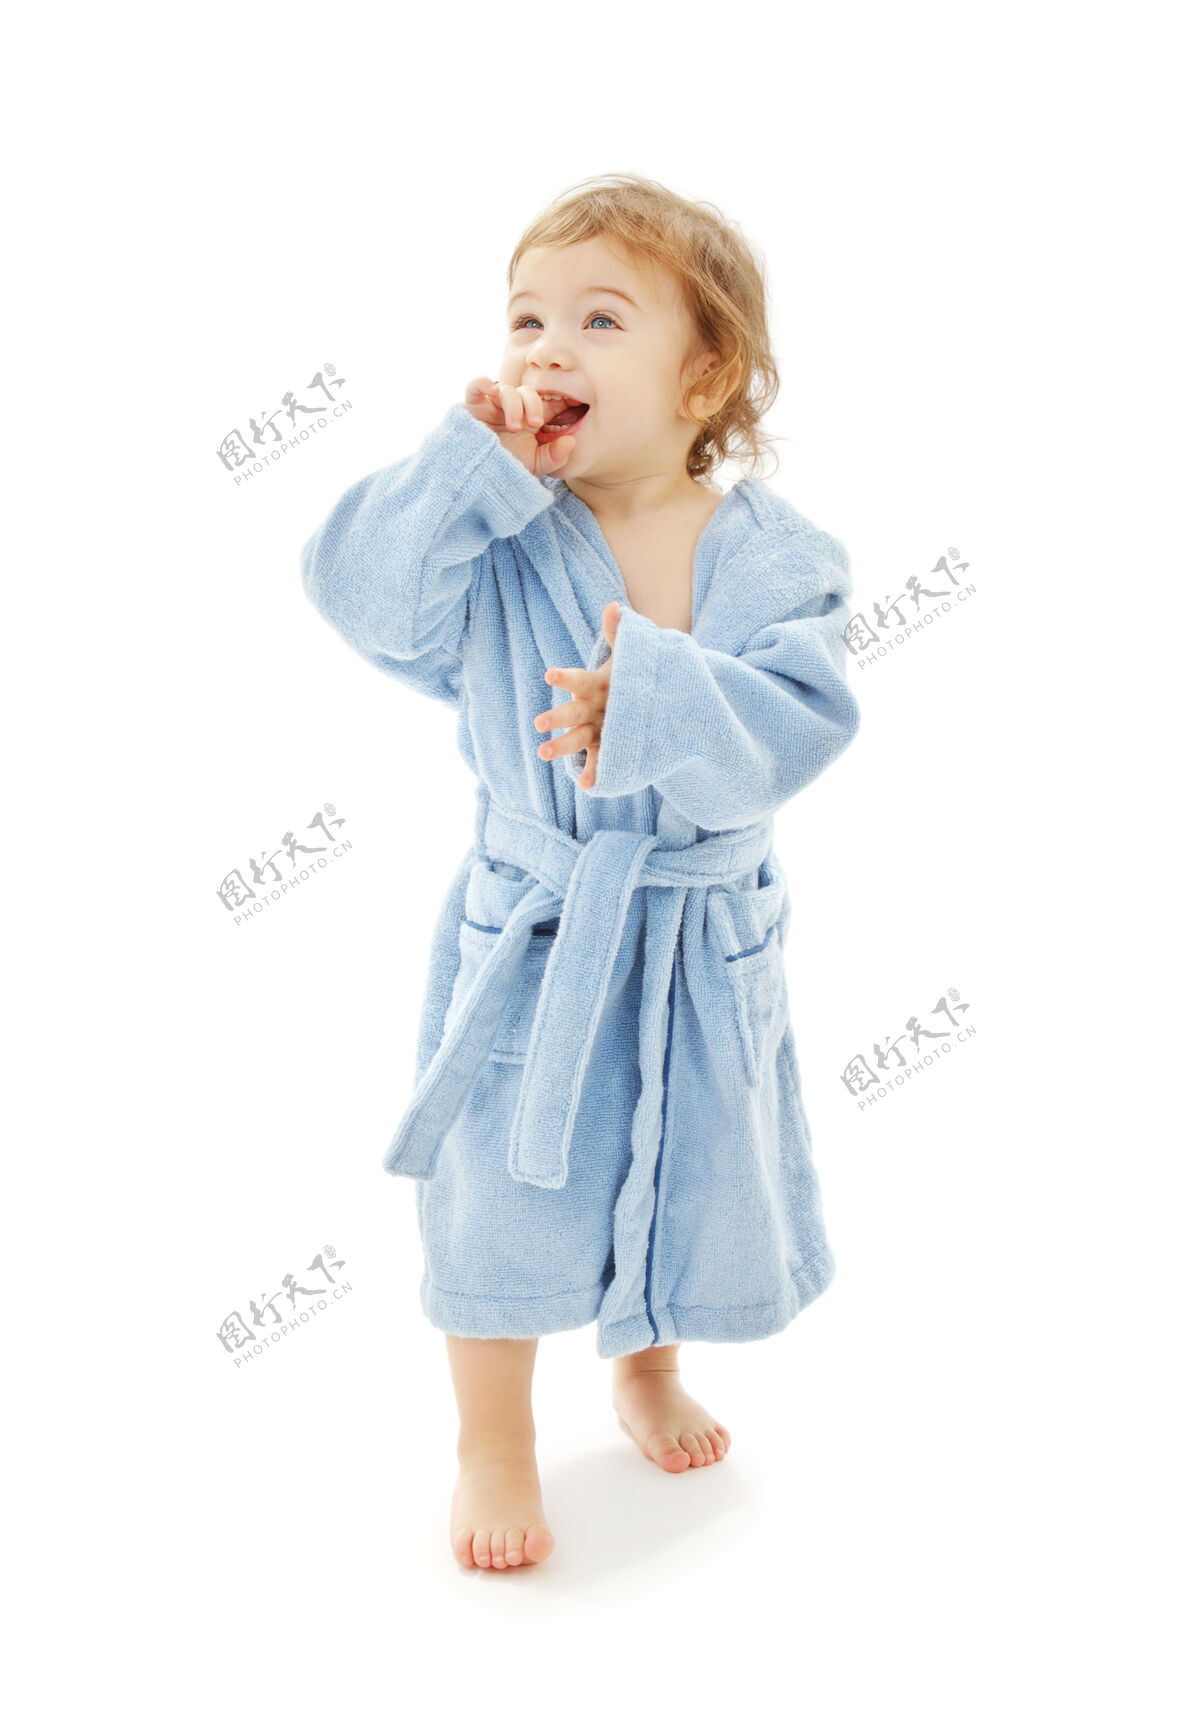 生活穿蓝袍白袍的男婴男孩舒适童年